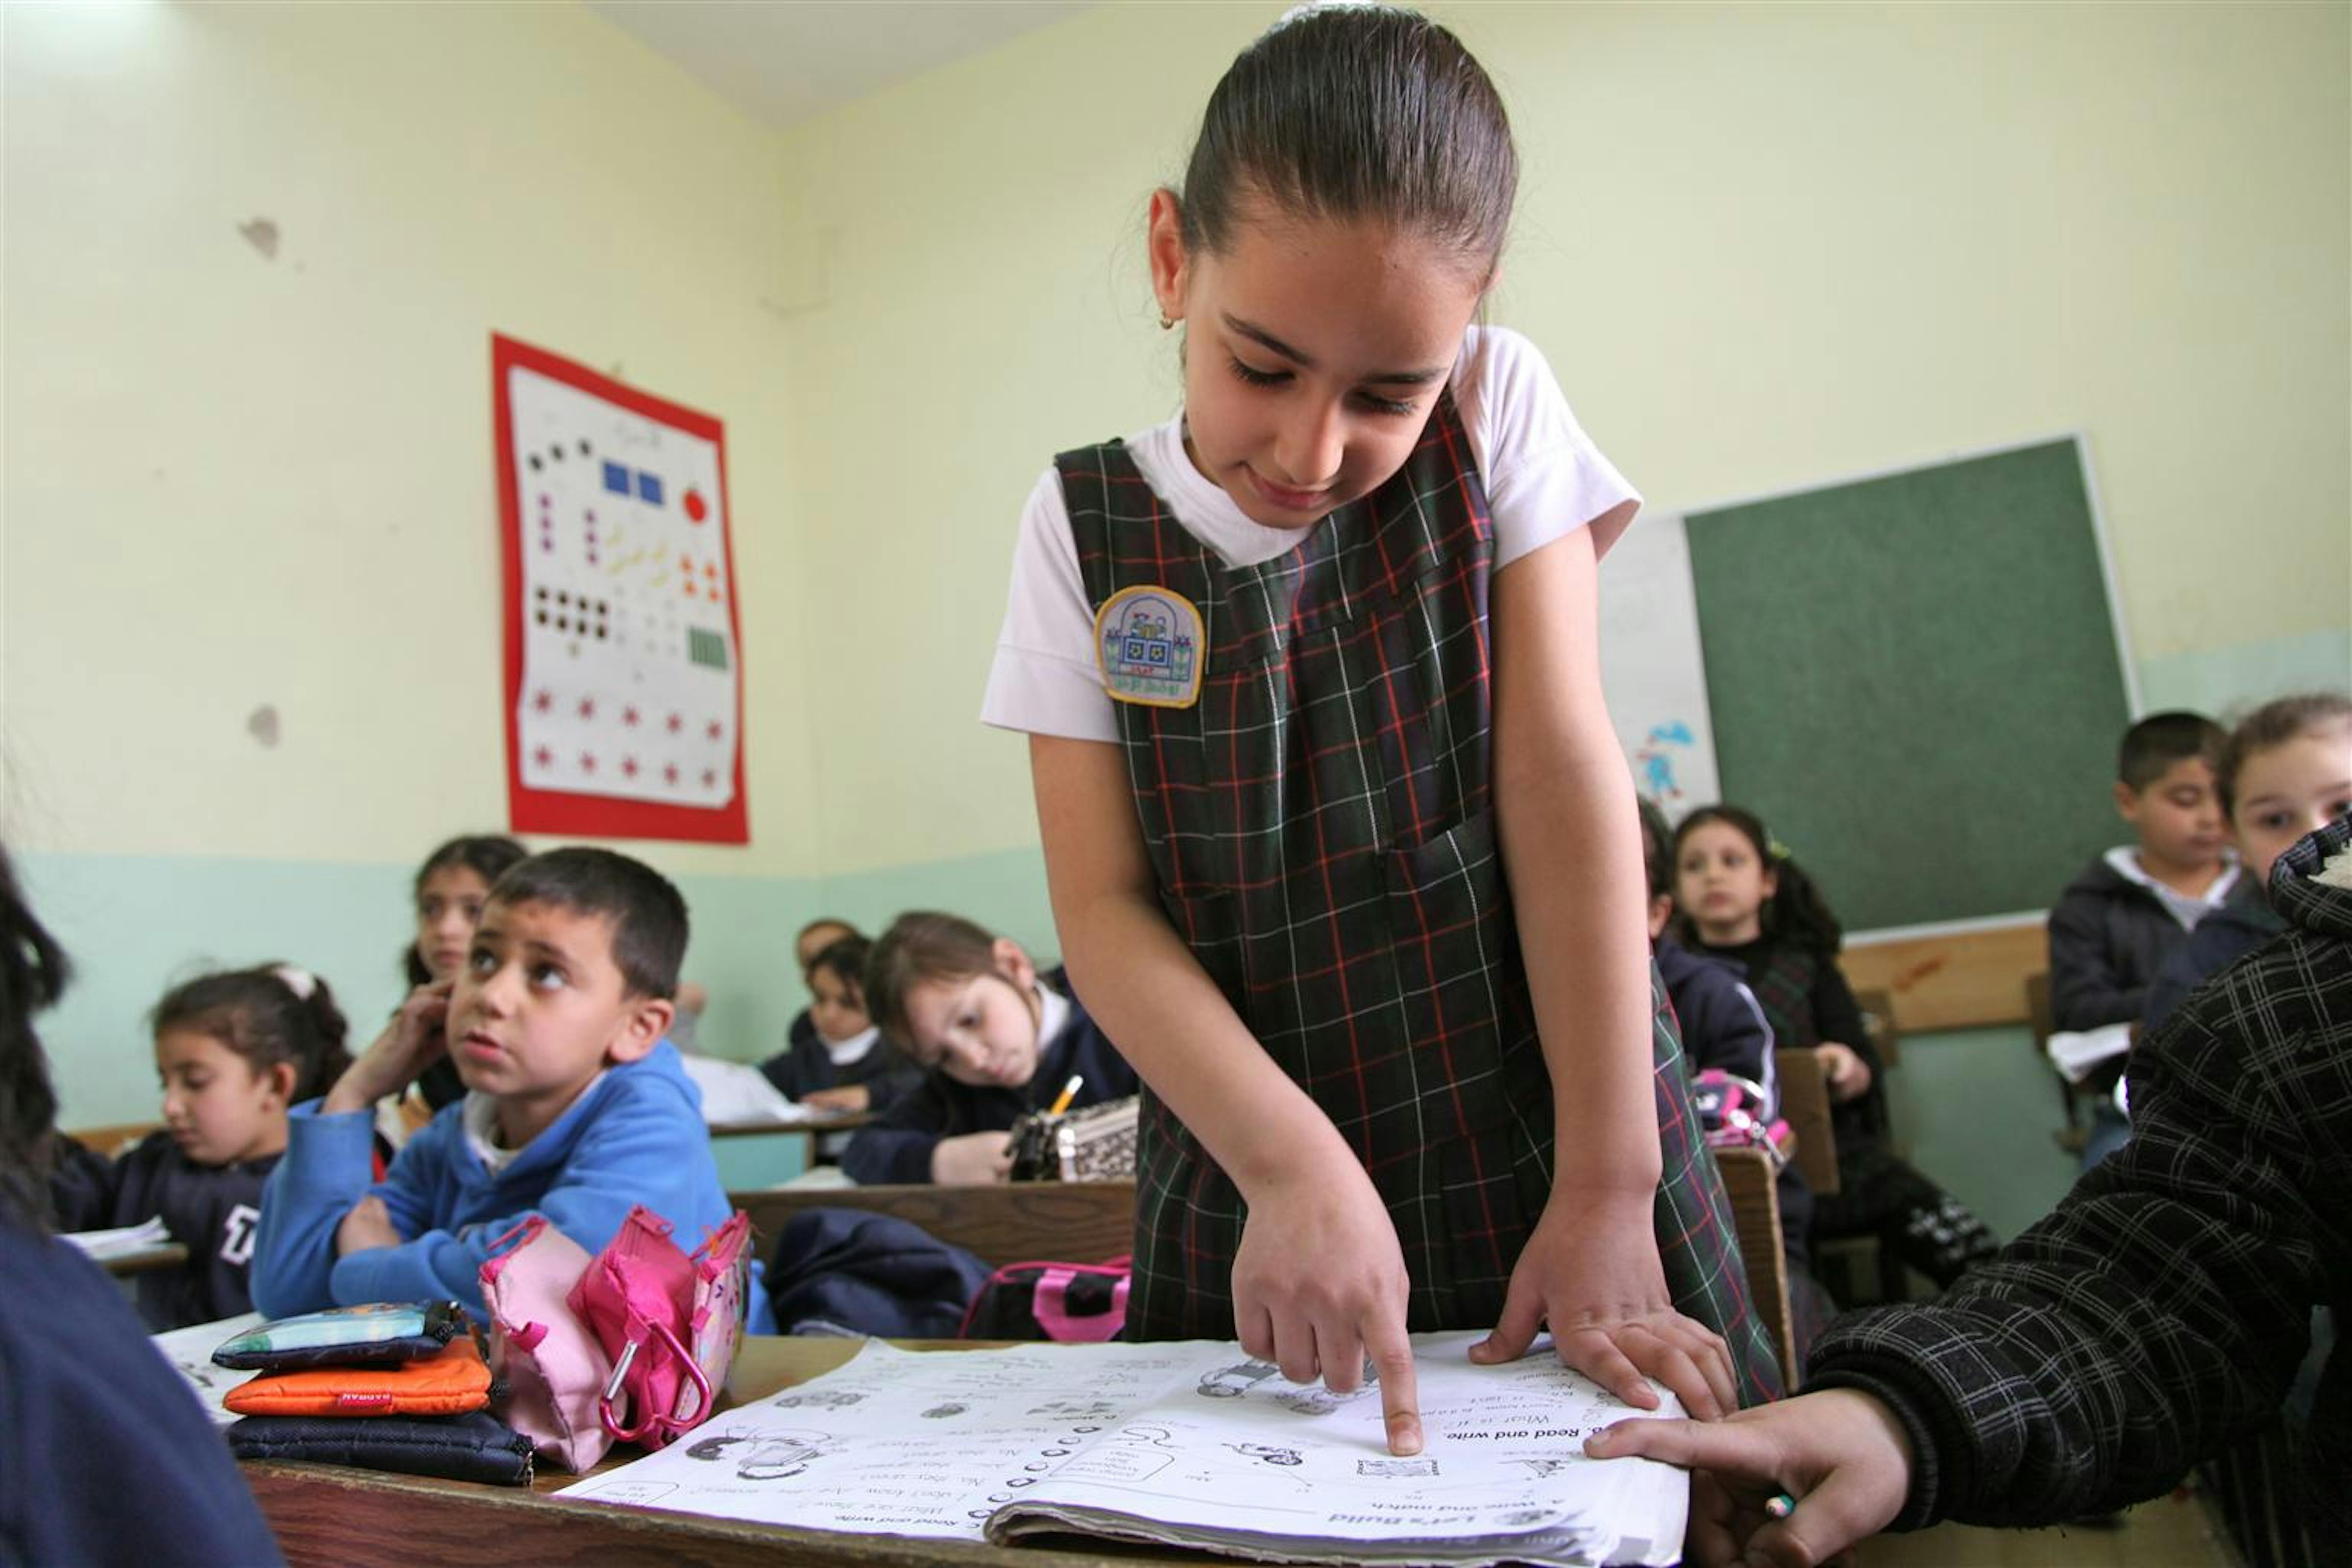 Una bambina palestinese durante una lezione. ©UNICEF/NYHQ2012-0314/Pirozzi